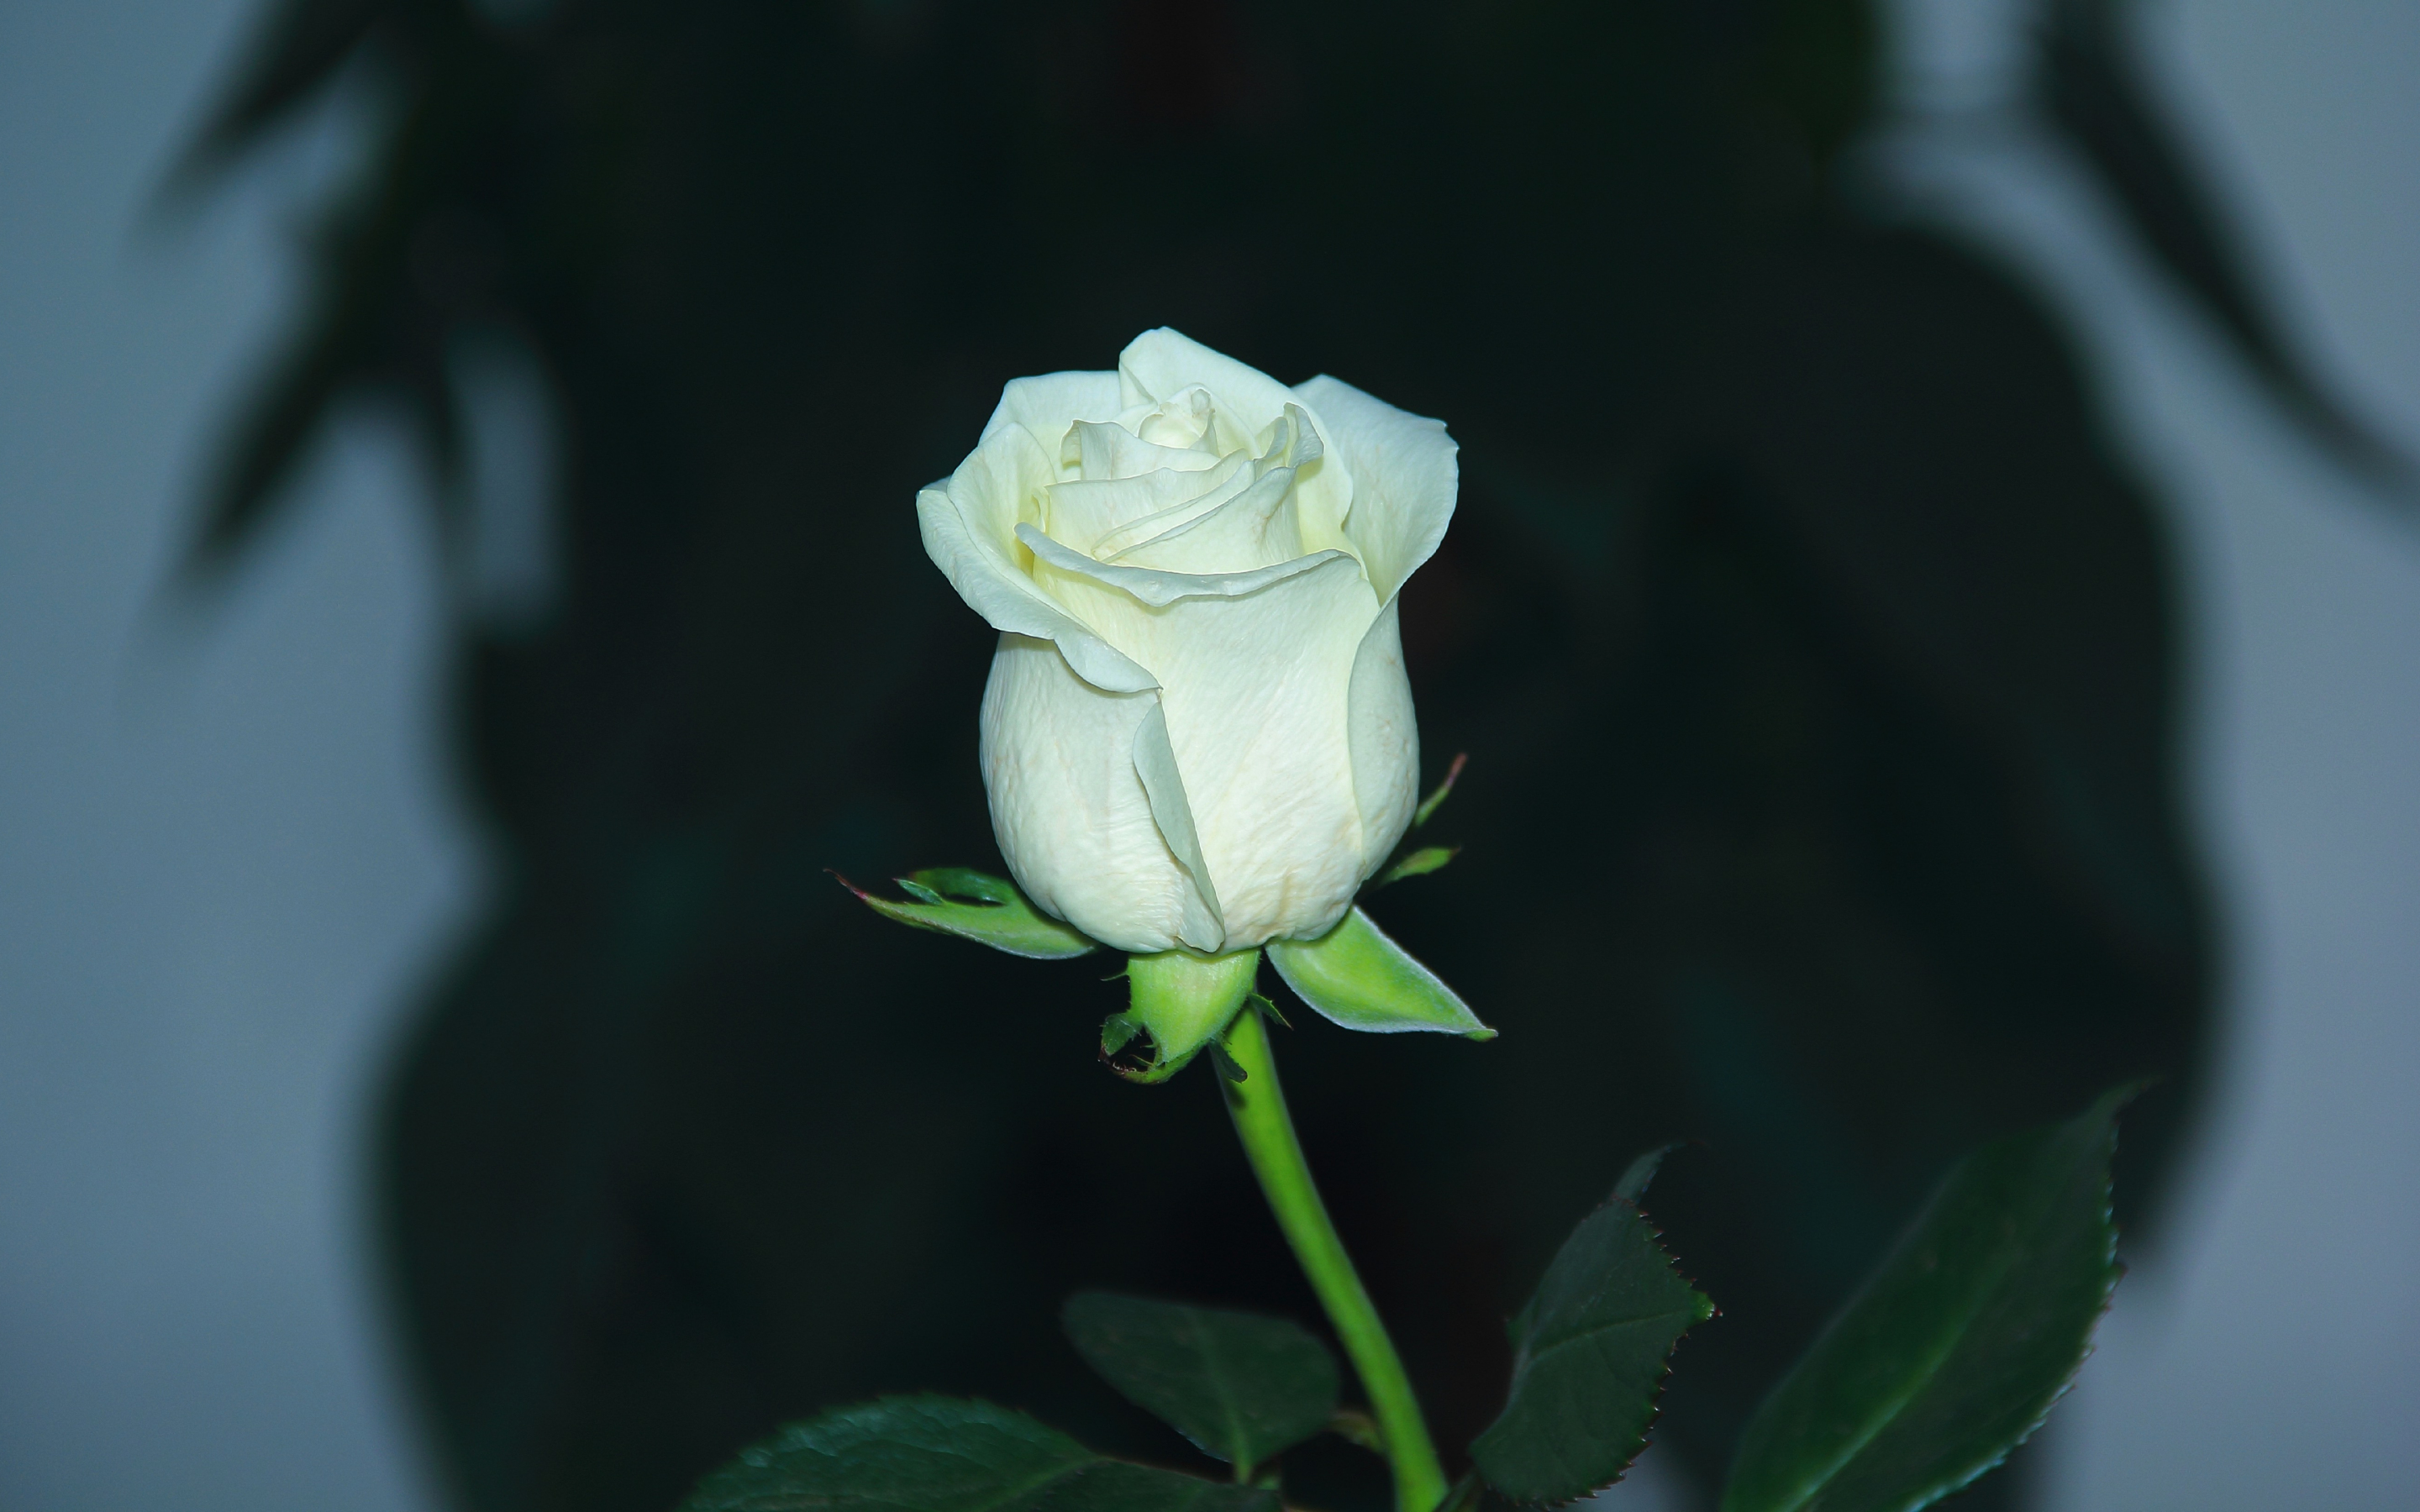 White rose, bud, flower, portrait, 2880x1800 wallpaper